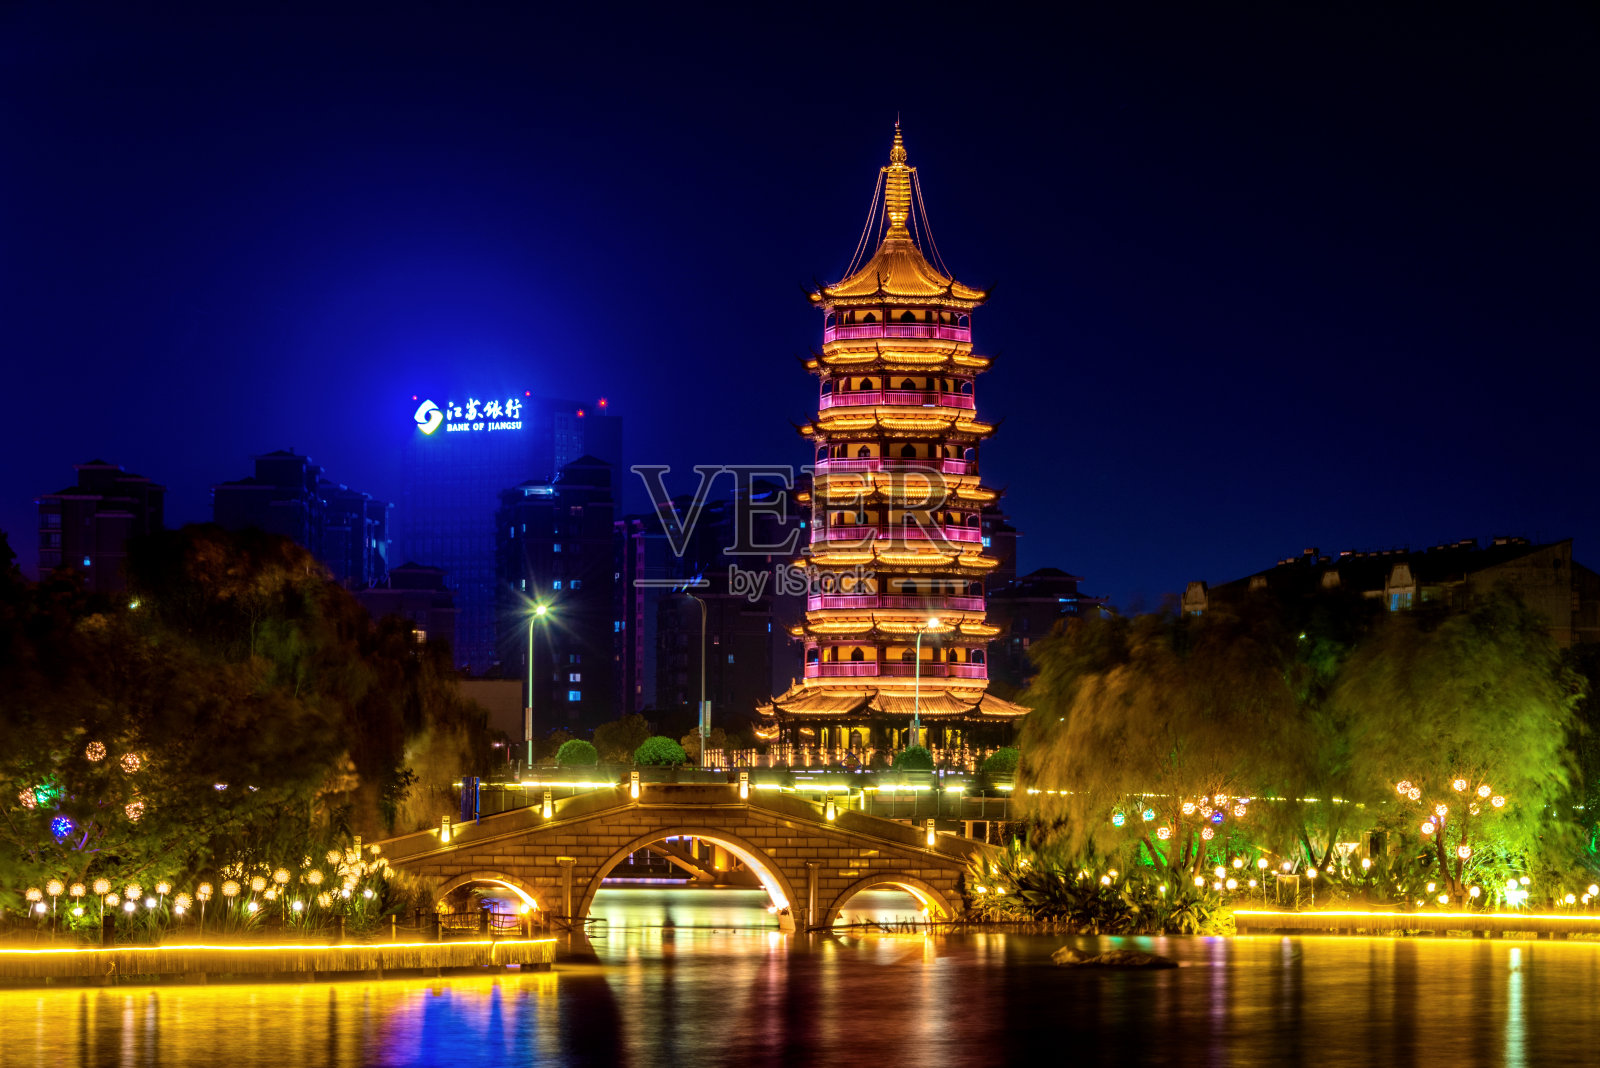 中国江苏泰州凤城河景区文峰塔夜景照片摄影图片